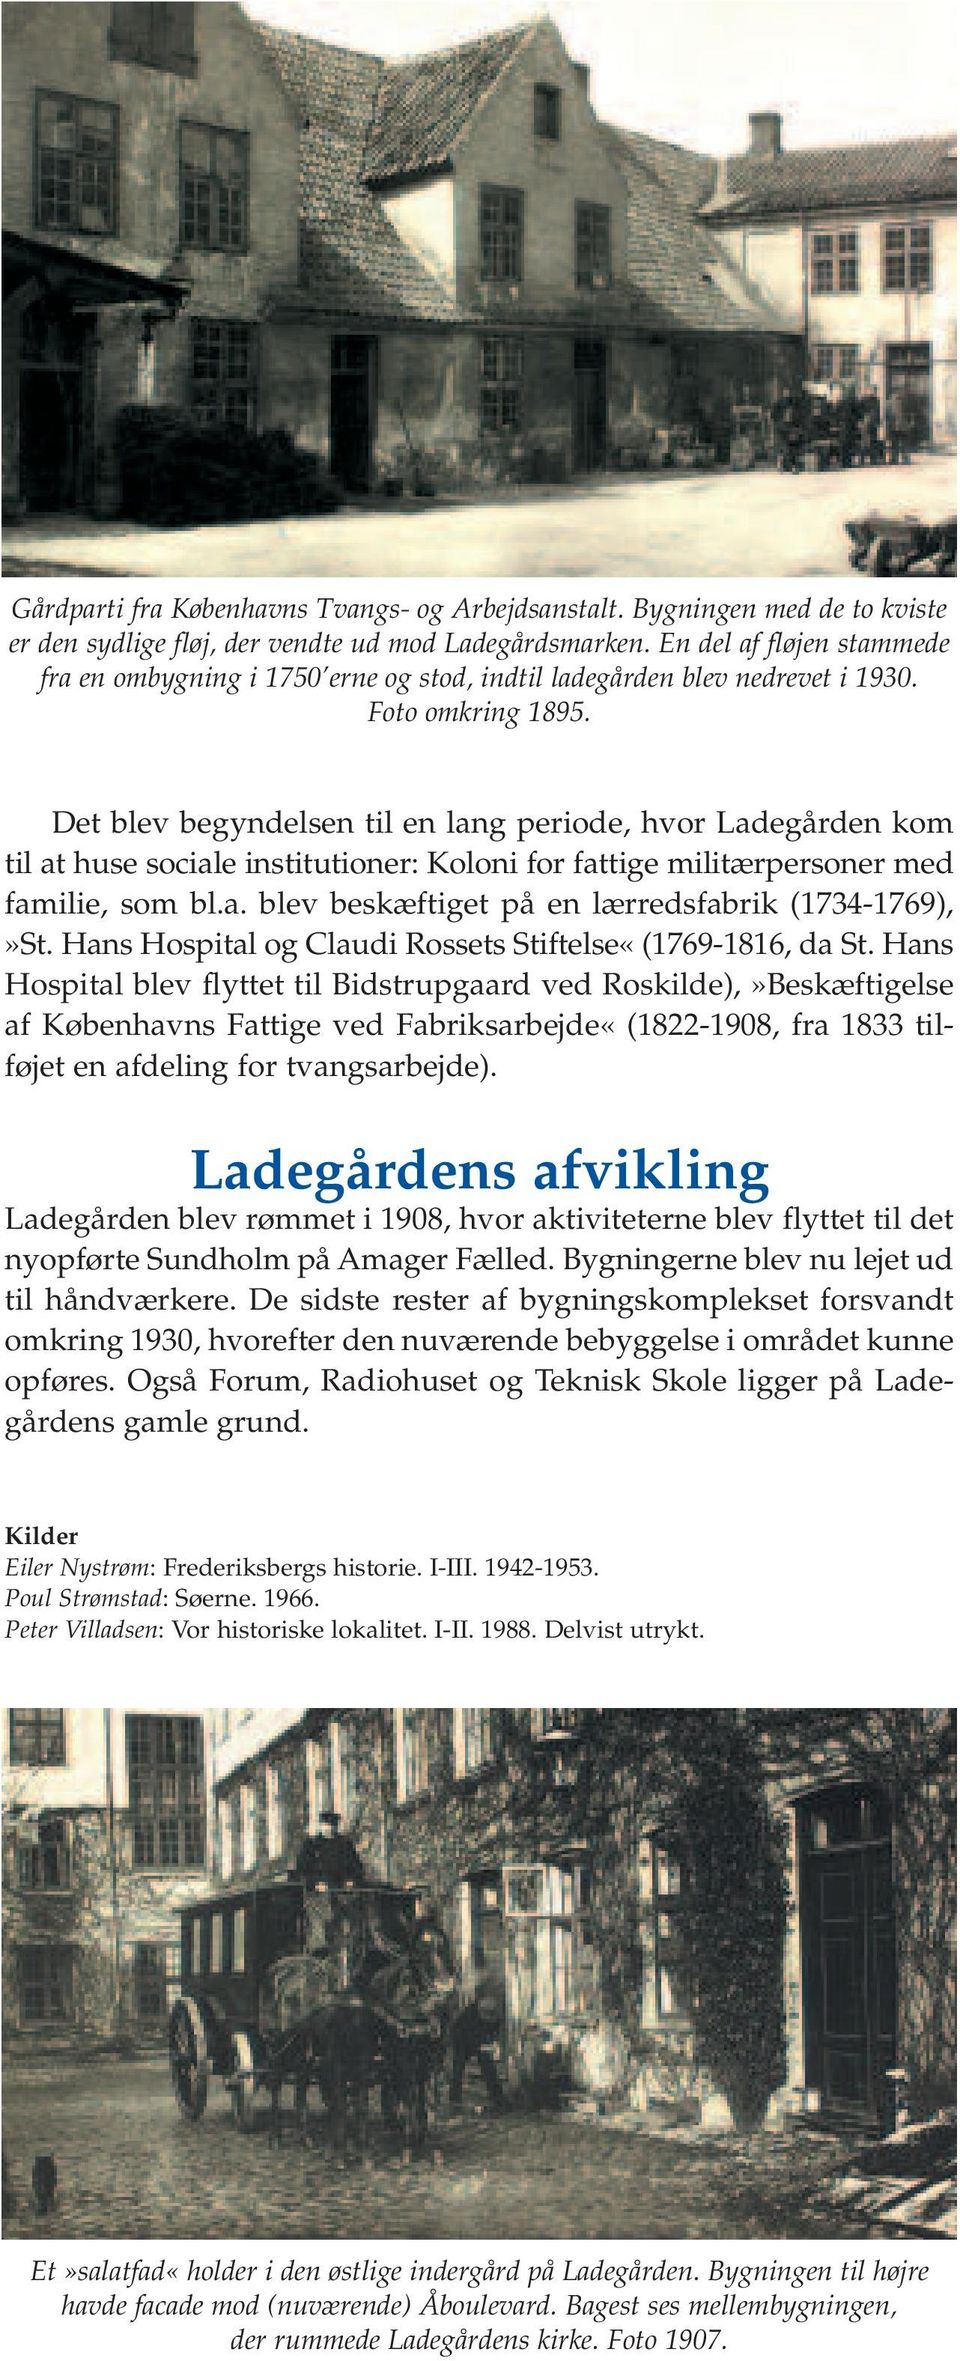 Det blev begyndelsen til en lang periode, hvor Ladegården kom til at huse sociale institutioner: Koloni for fattige militærpersoner med familie, som bl.a. blev beskæftiget på en lærredsfabrik (1734-1769),»St.